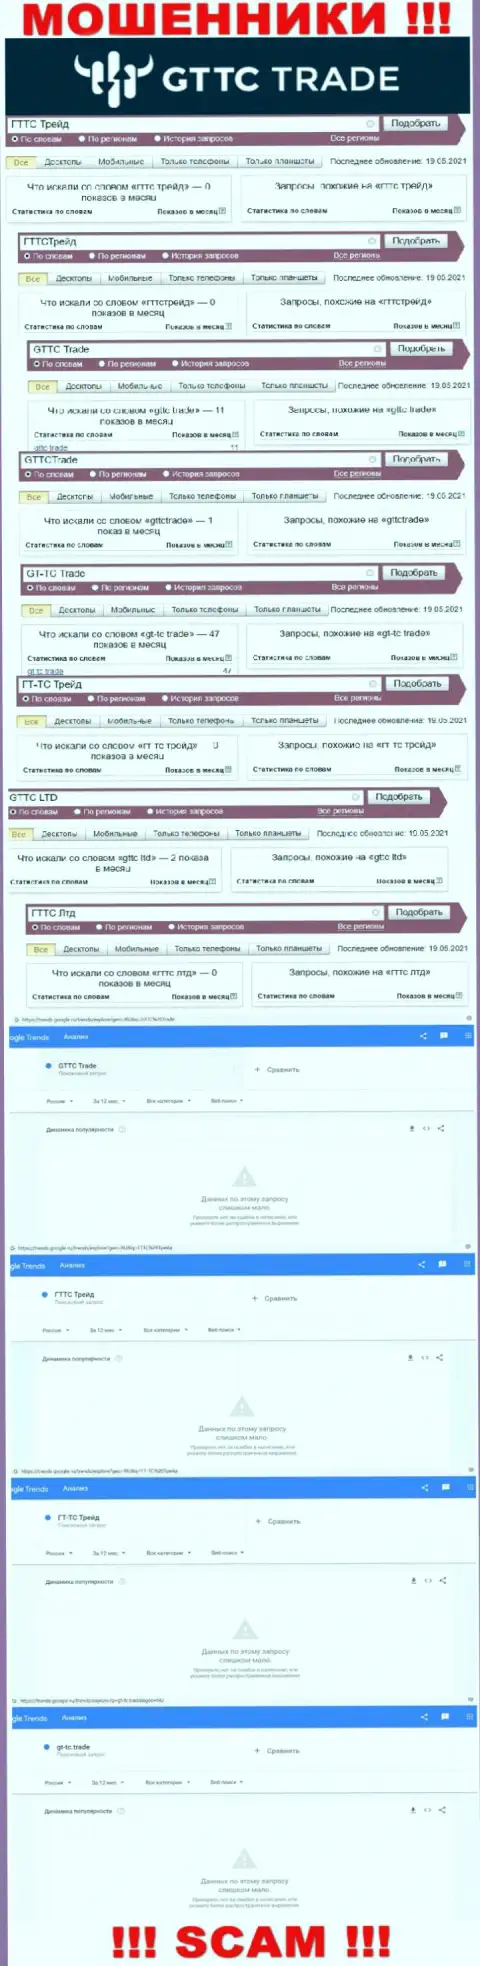 Количество онлайн запросов пользователями сети интернет информации об жуликах ГТТС Лтд